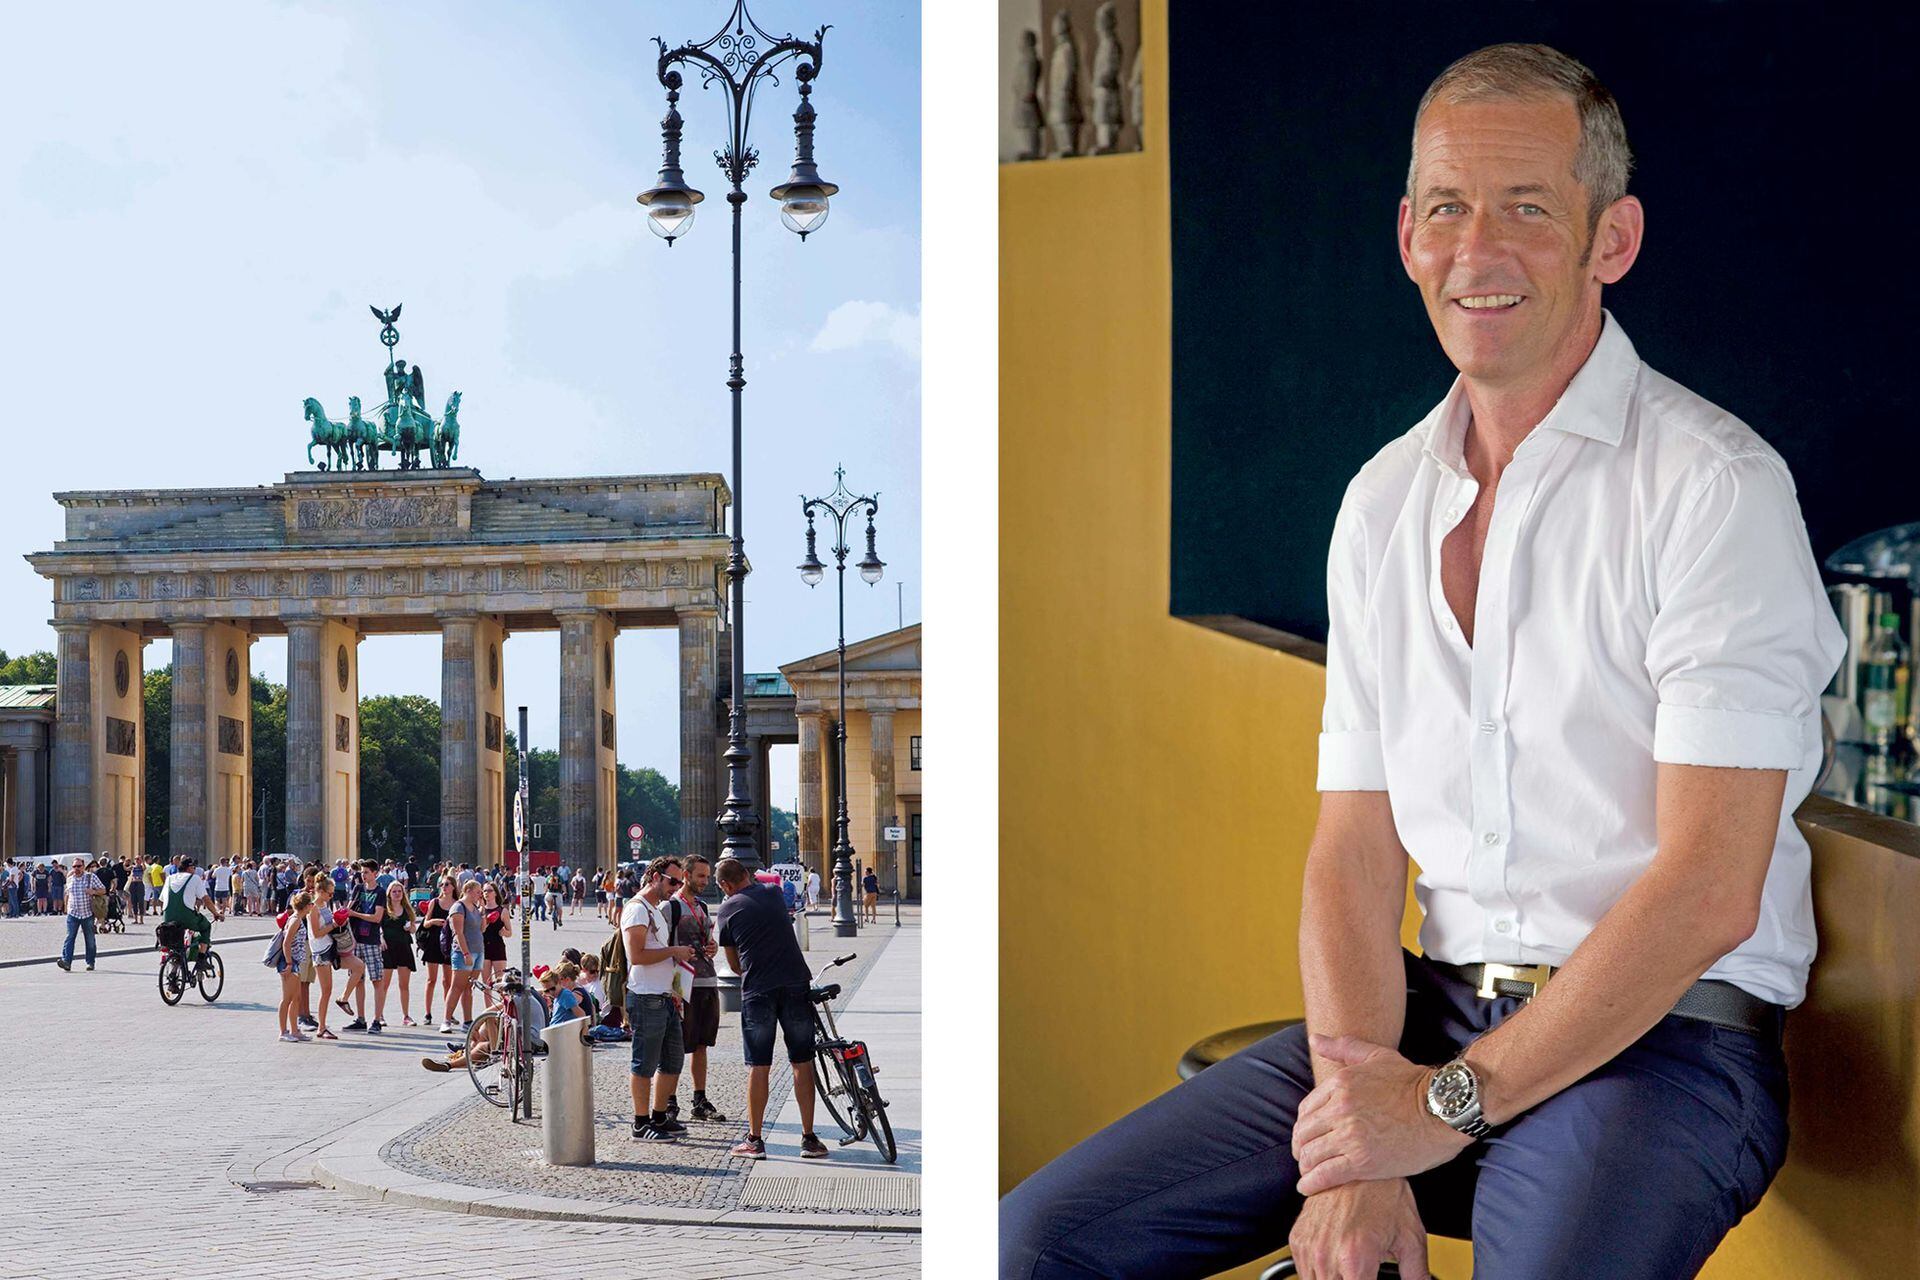 La Puerta de Brandenburgo, de estilo neoclásico, se terminó de construir a fines del siglo XVIII. Es símbolo tanto de Berlín como de toda Alemania. Harald Pignatelli fue un guía de lujo que nos abrió las puertas (muchas, ocultas) de su ciudad natal.